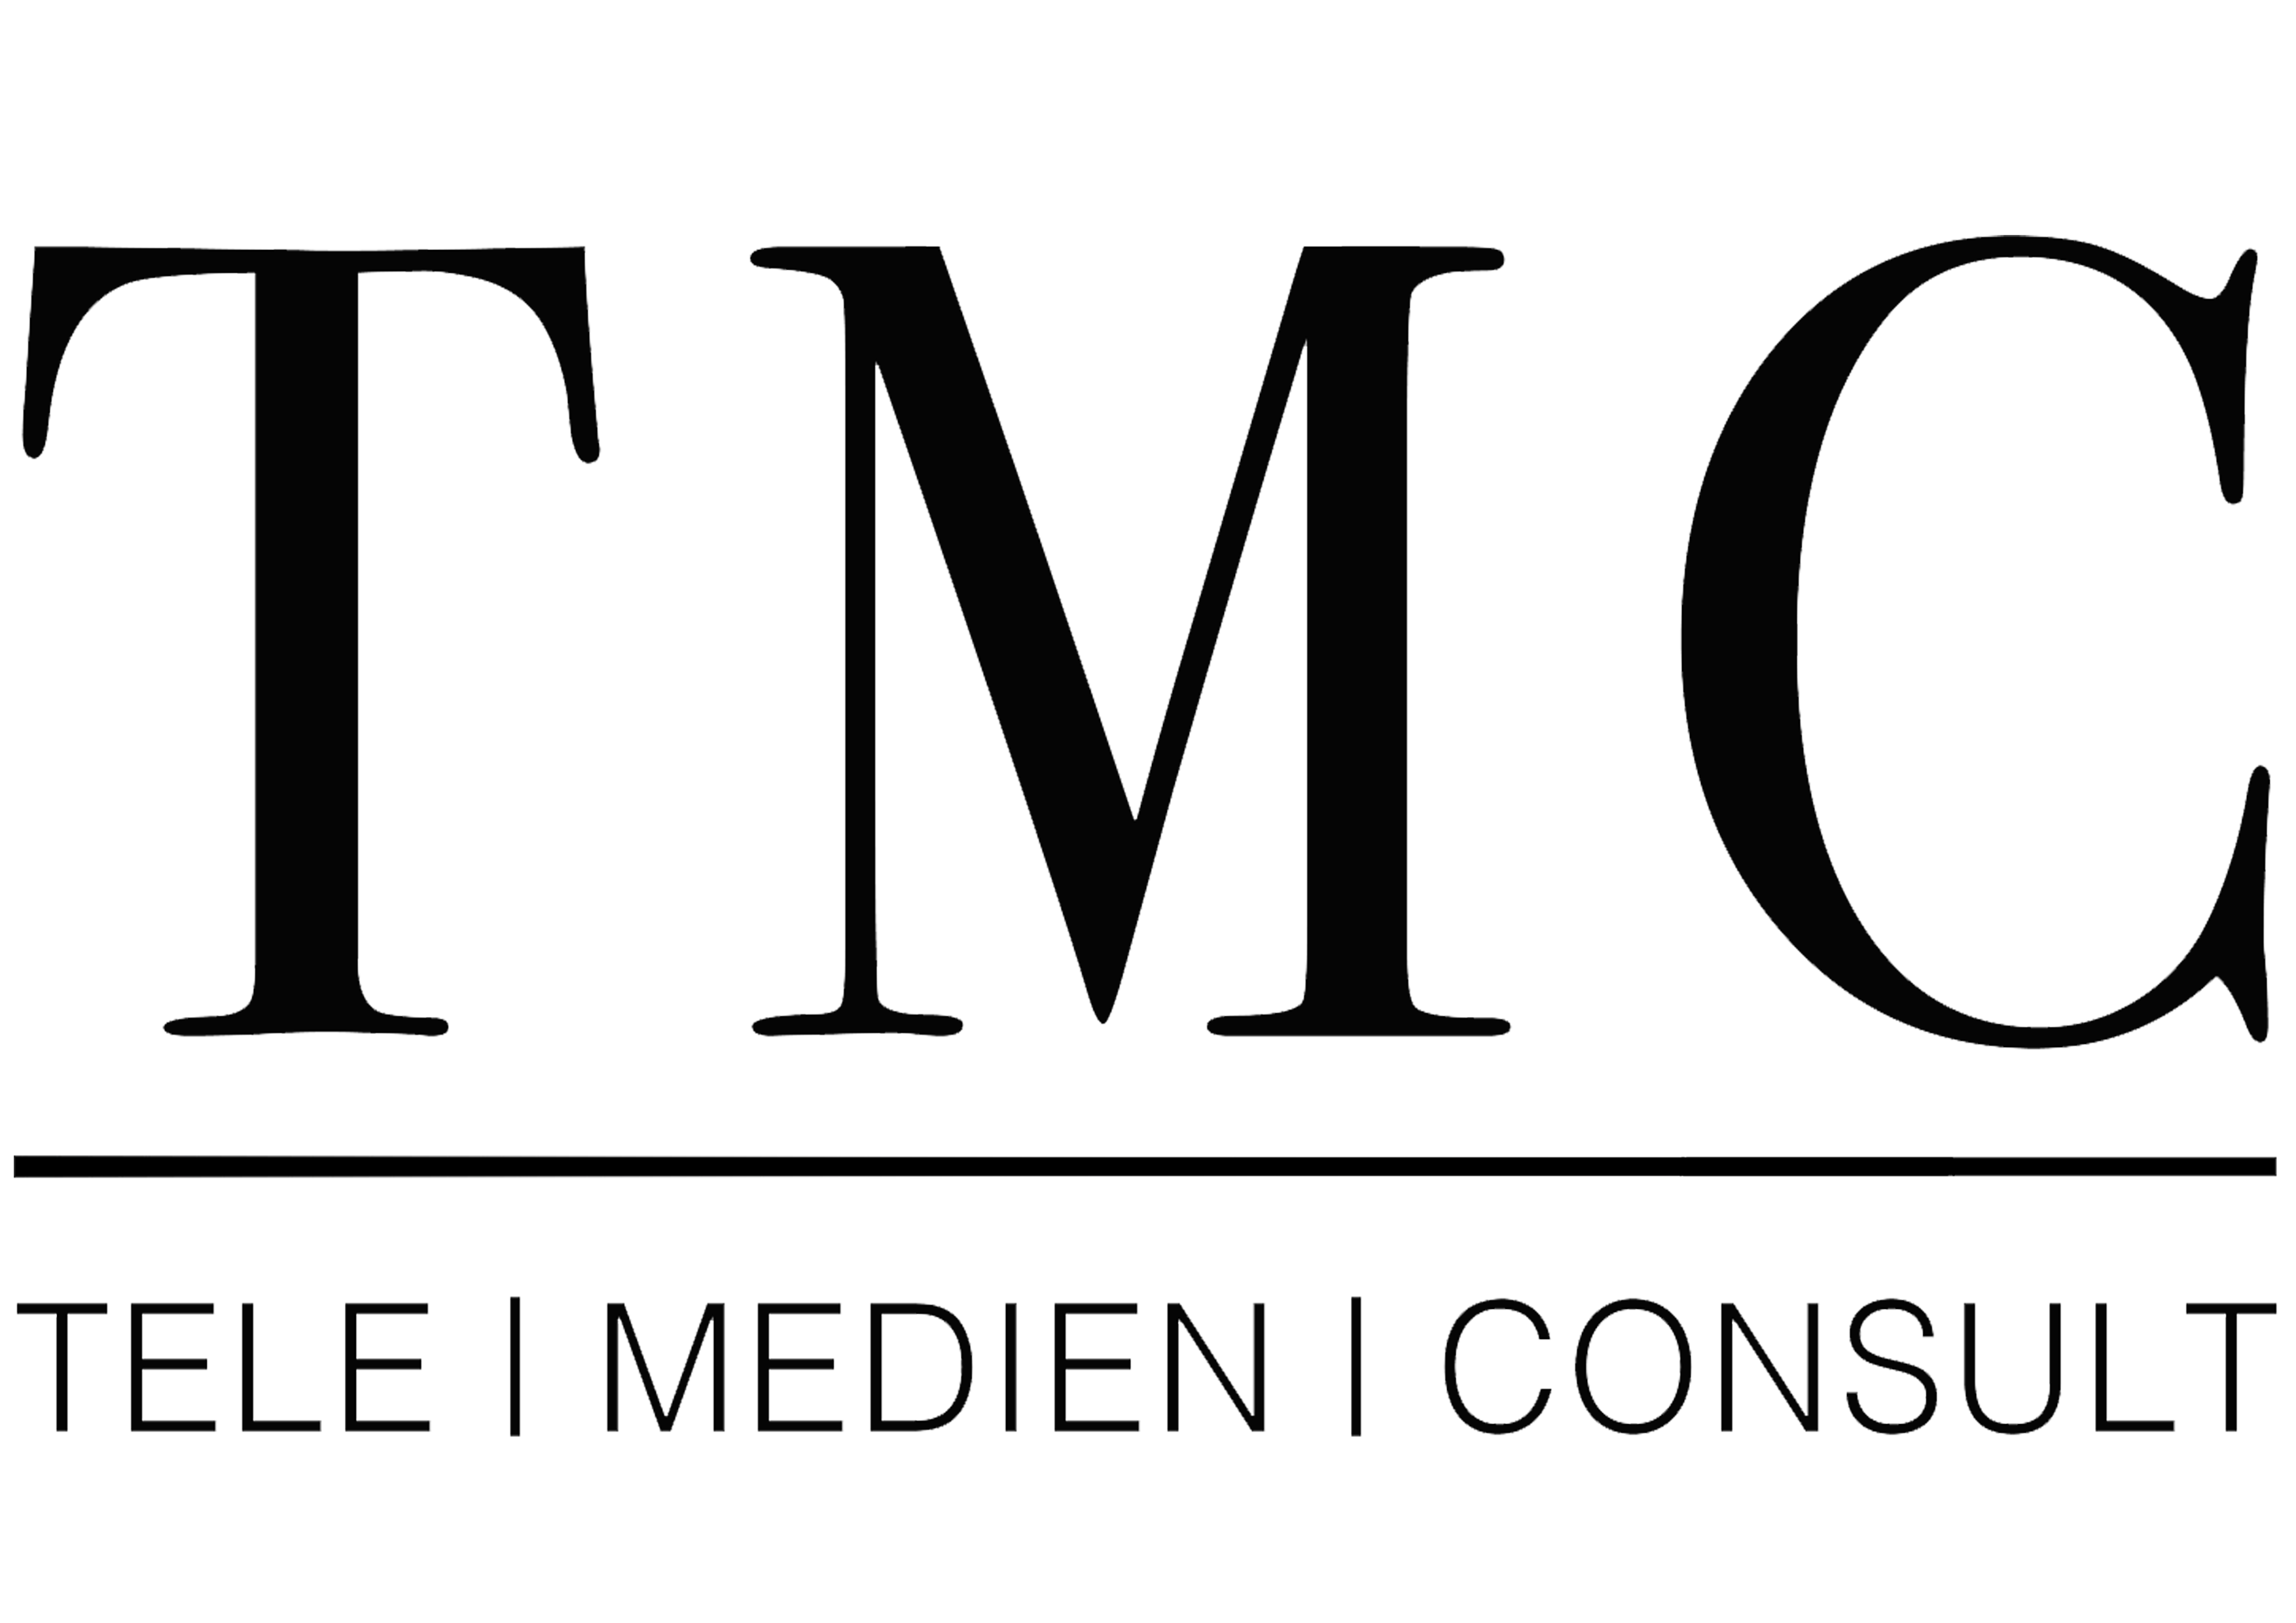 TMC Media GmbH